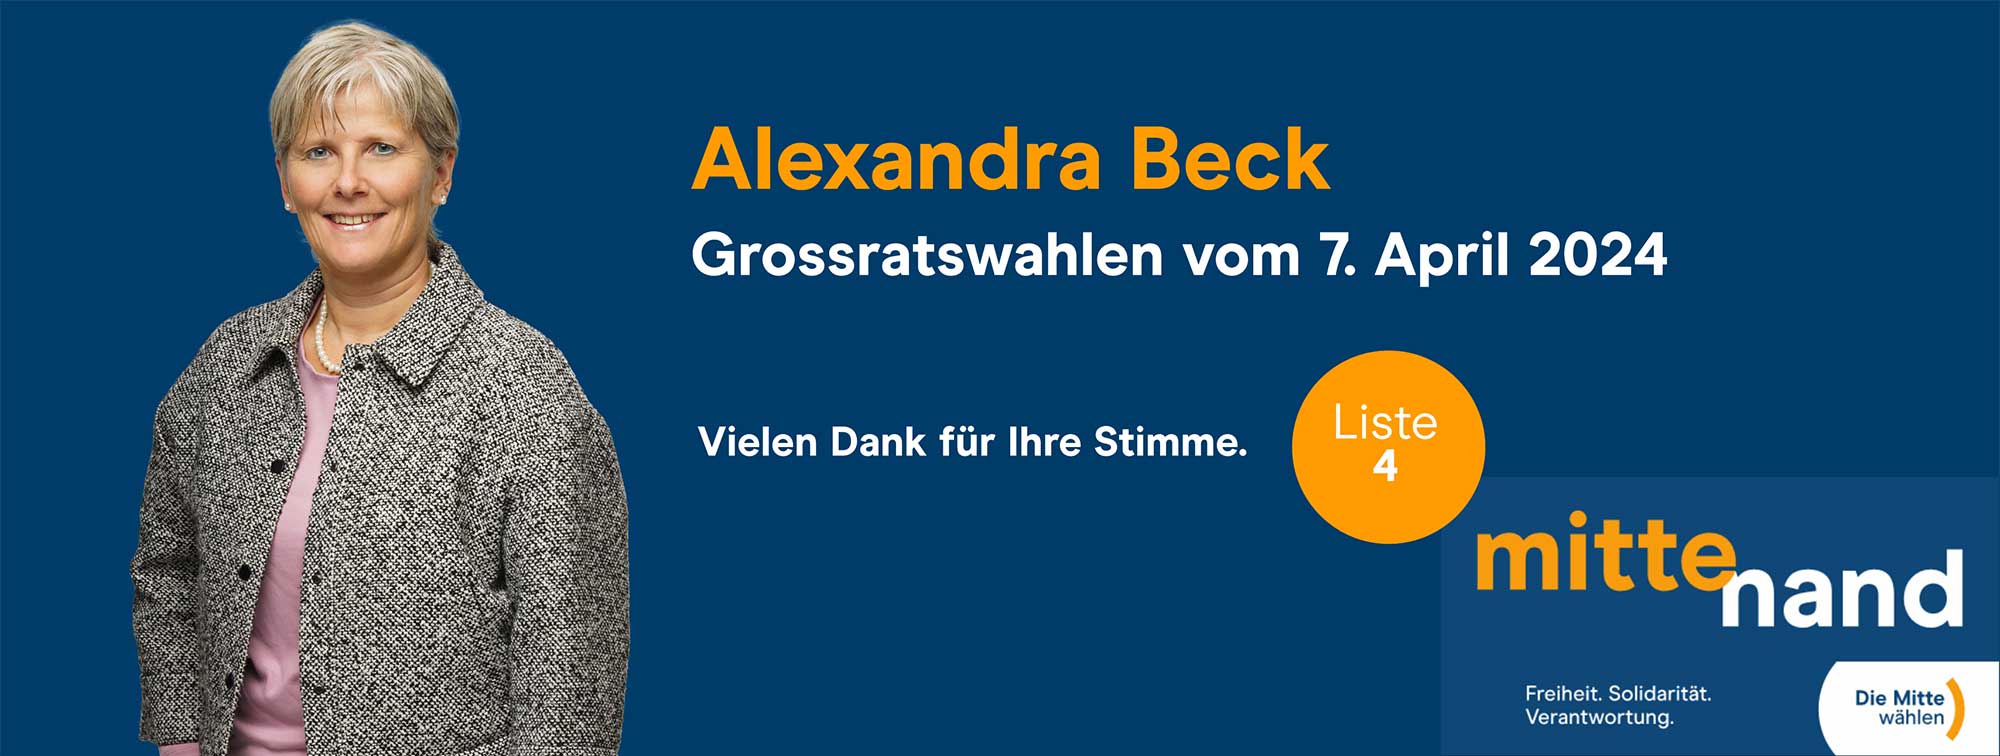 Wahlplakat von Alexandra Beck, Mitte